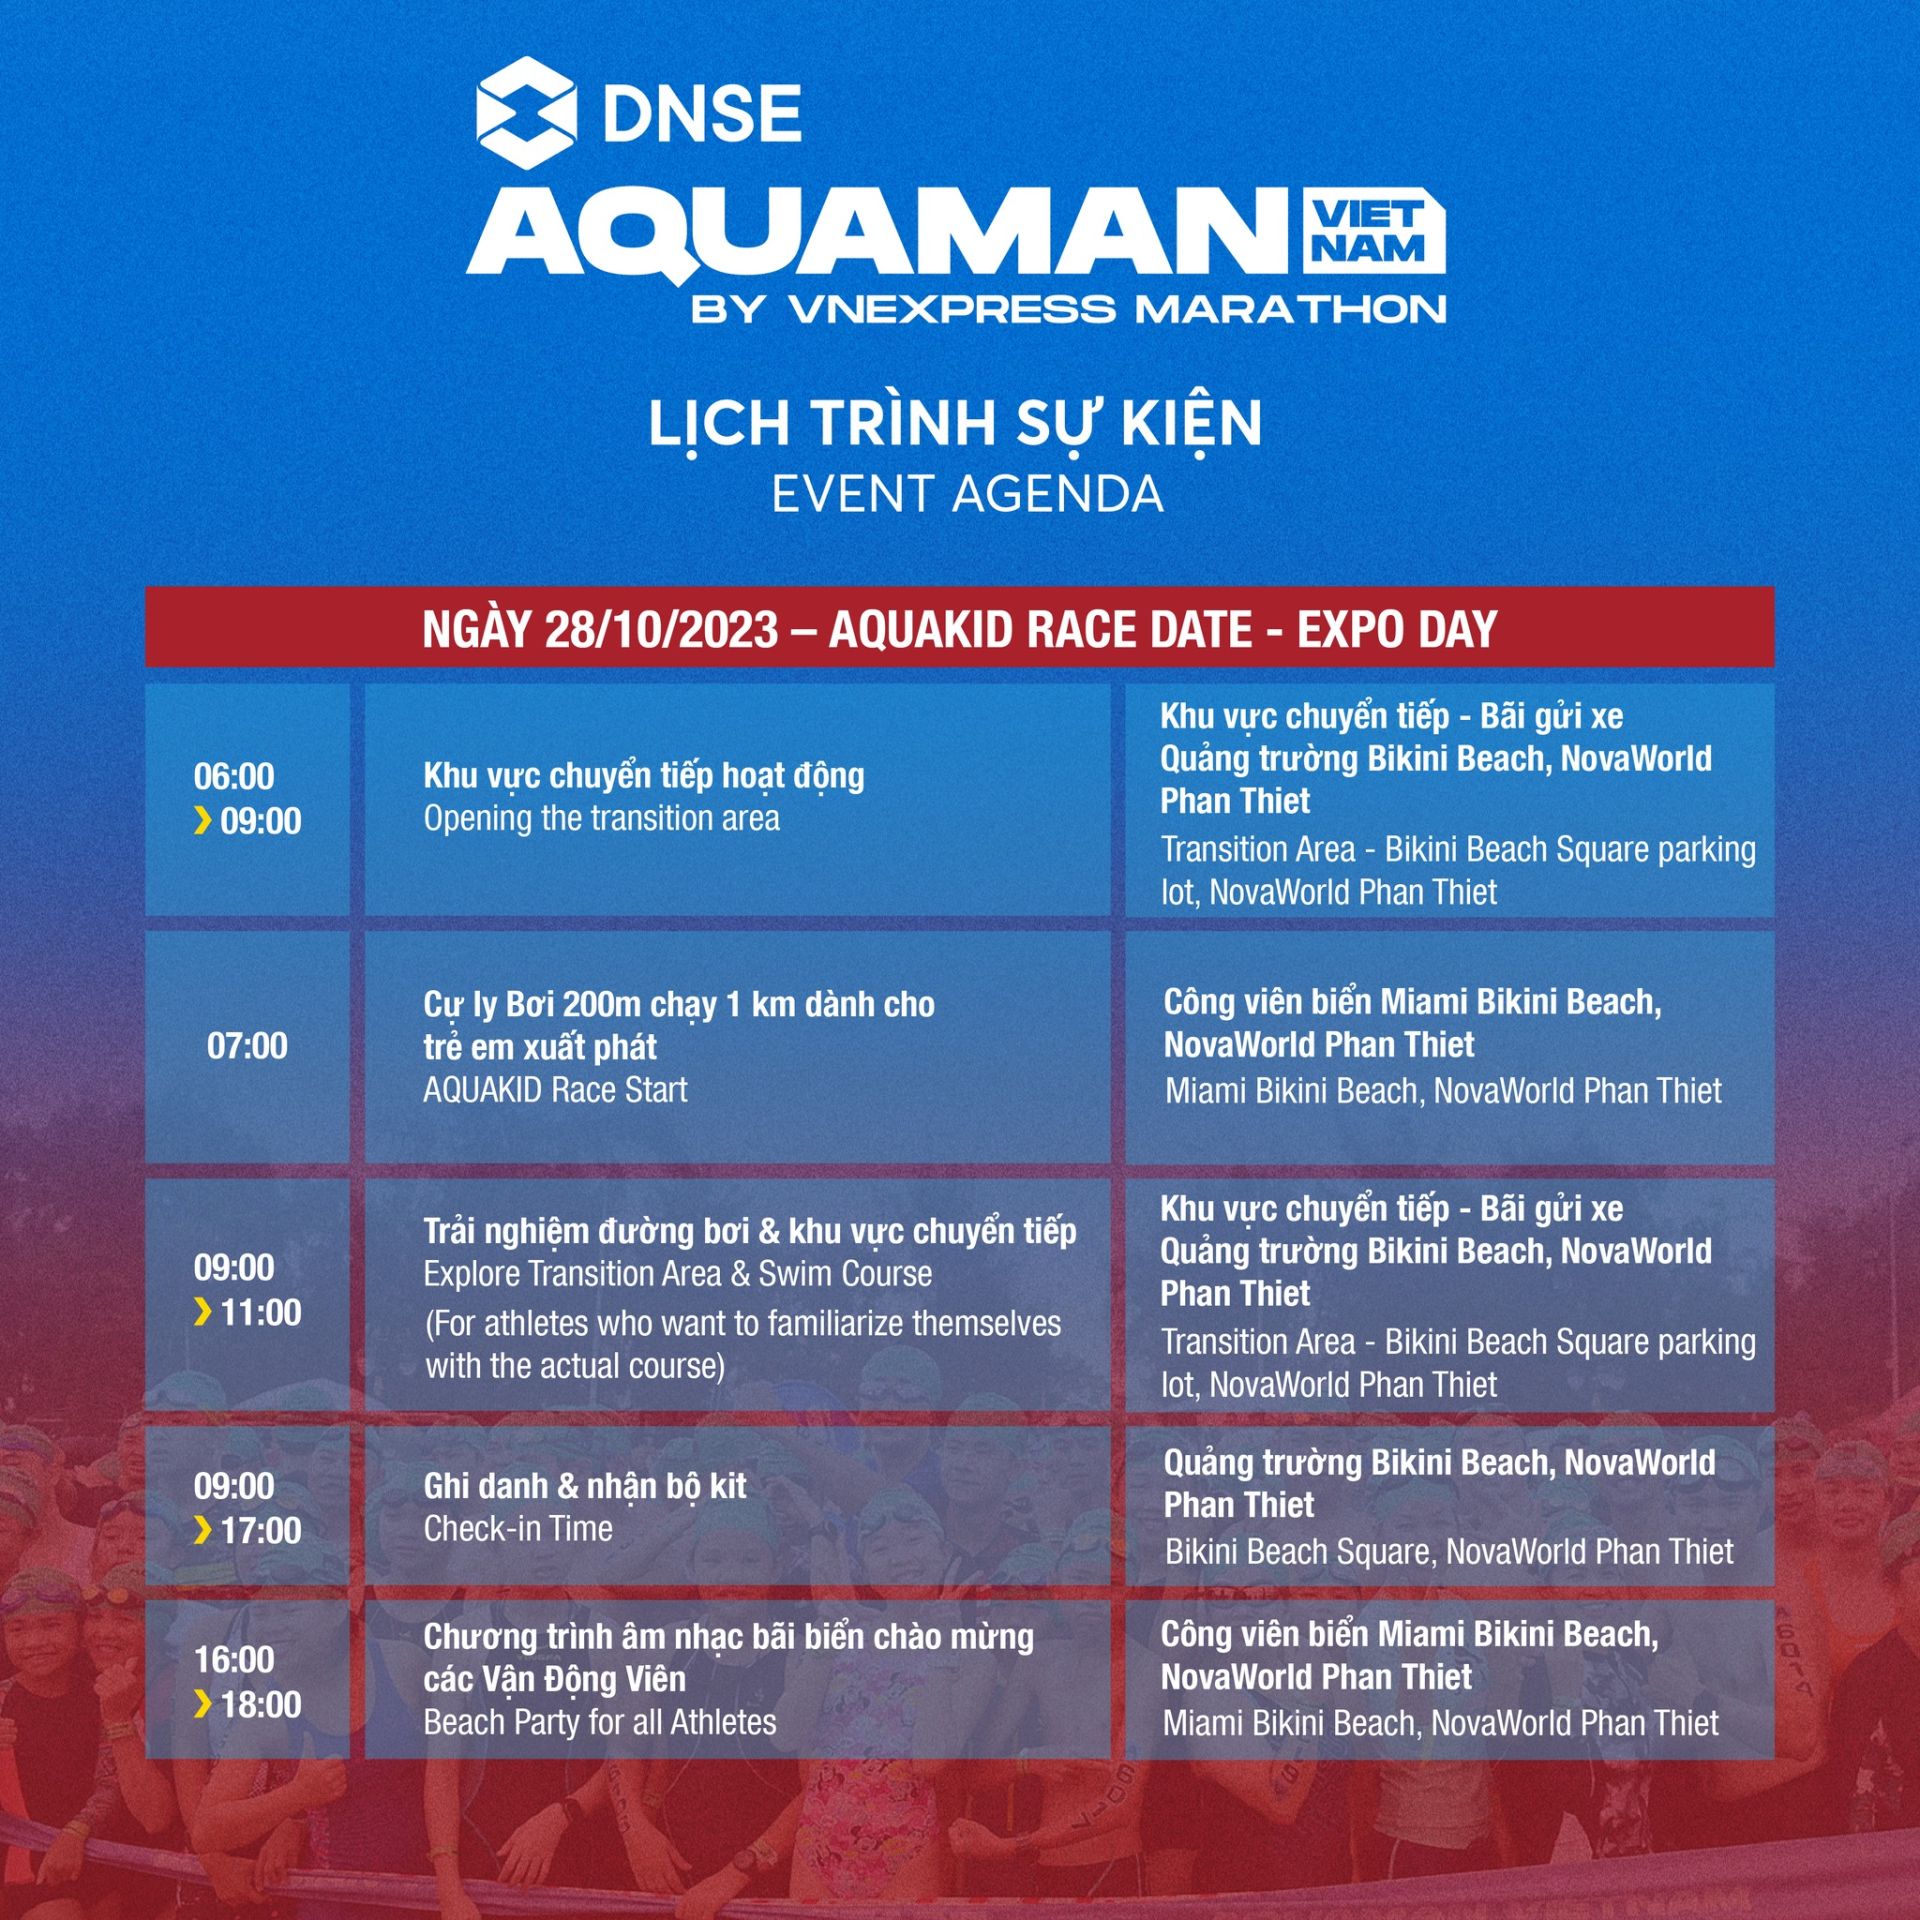 Lịch trình sự kiện DNSE Aquaman Vietnam, Phan Thiet 2023